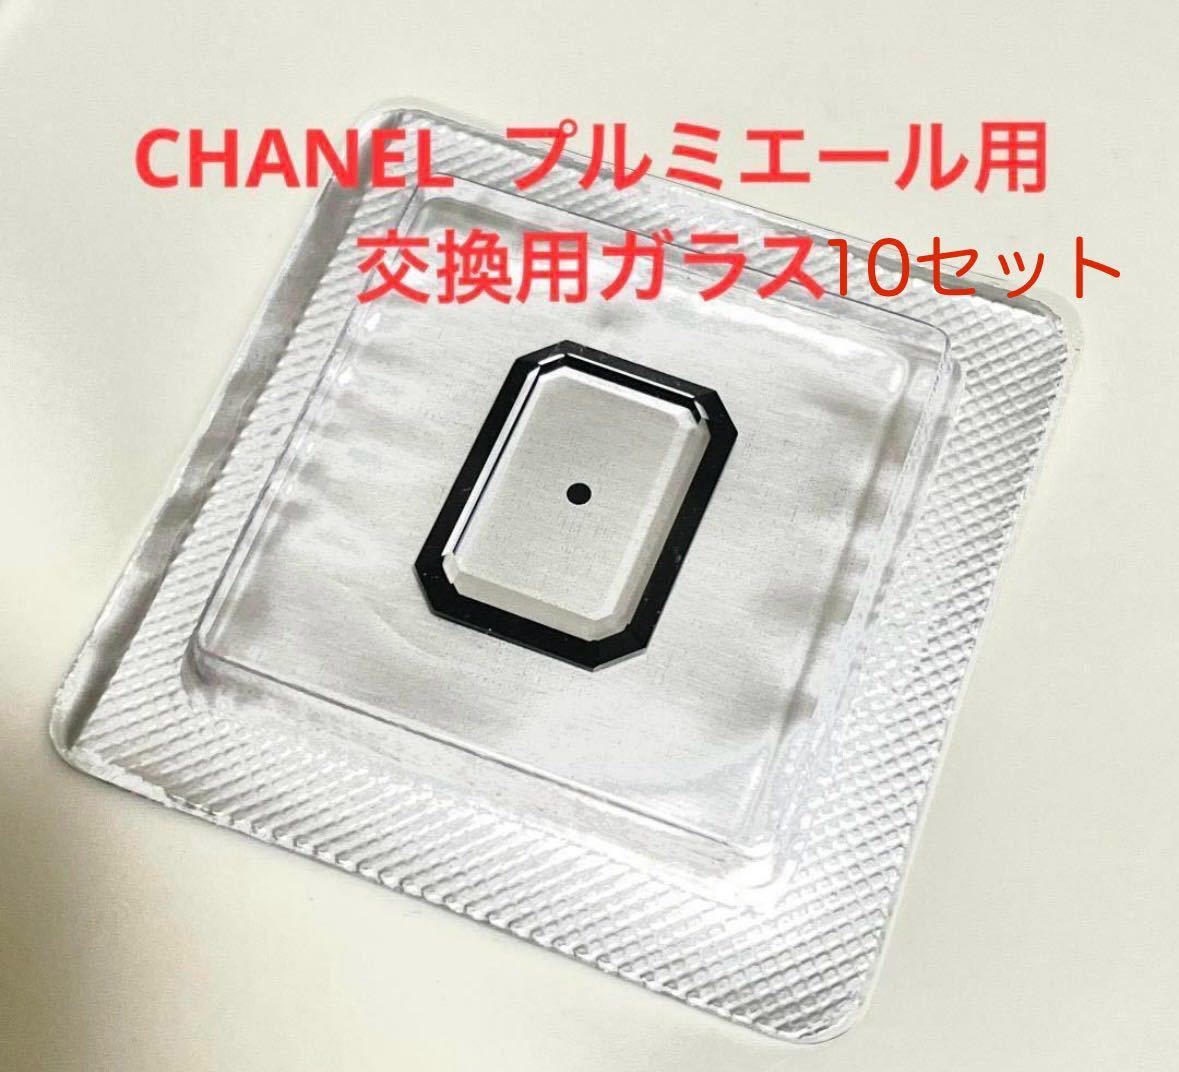 CHANEL プルミエール H0001用 交換用ガラス(10セット)